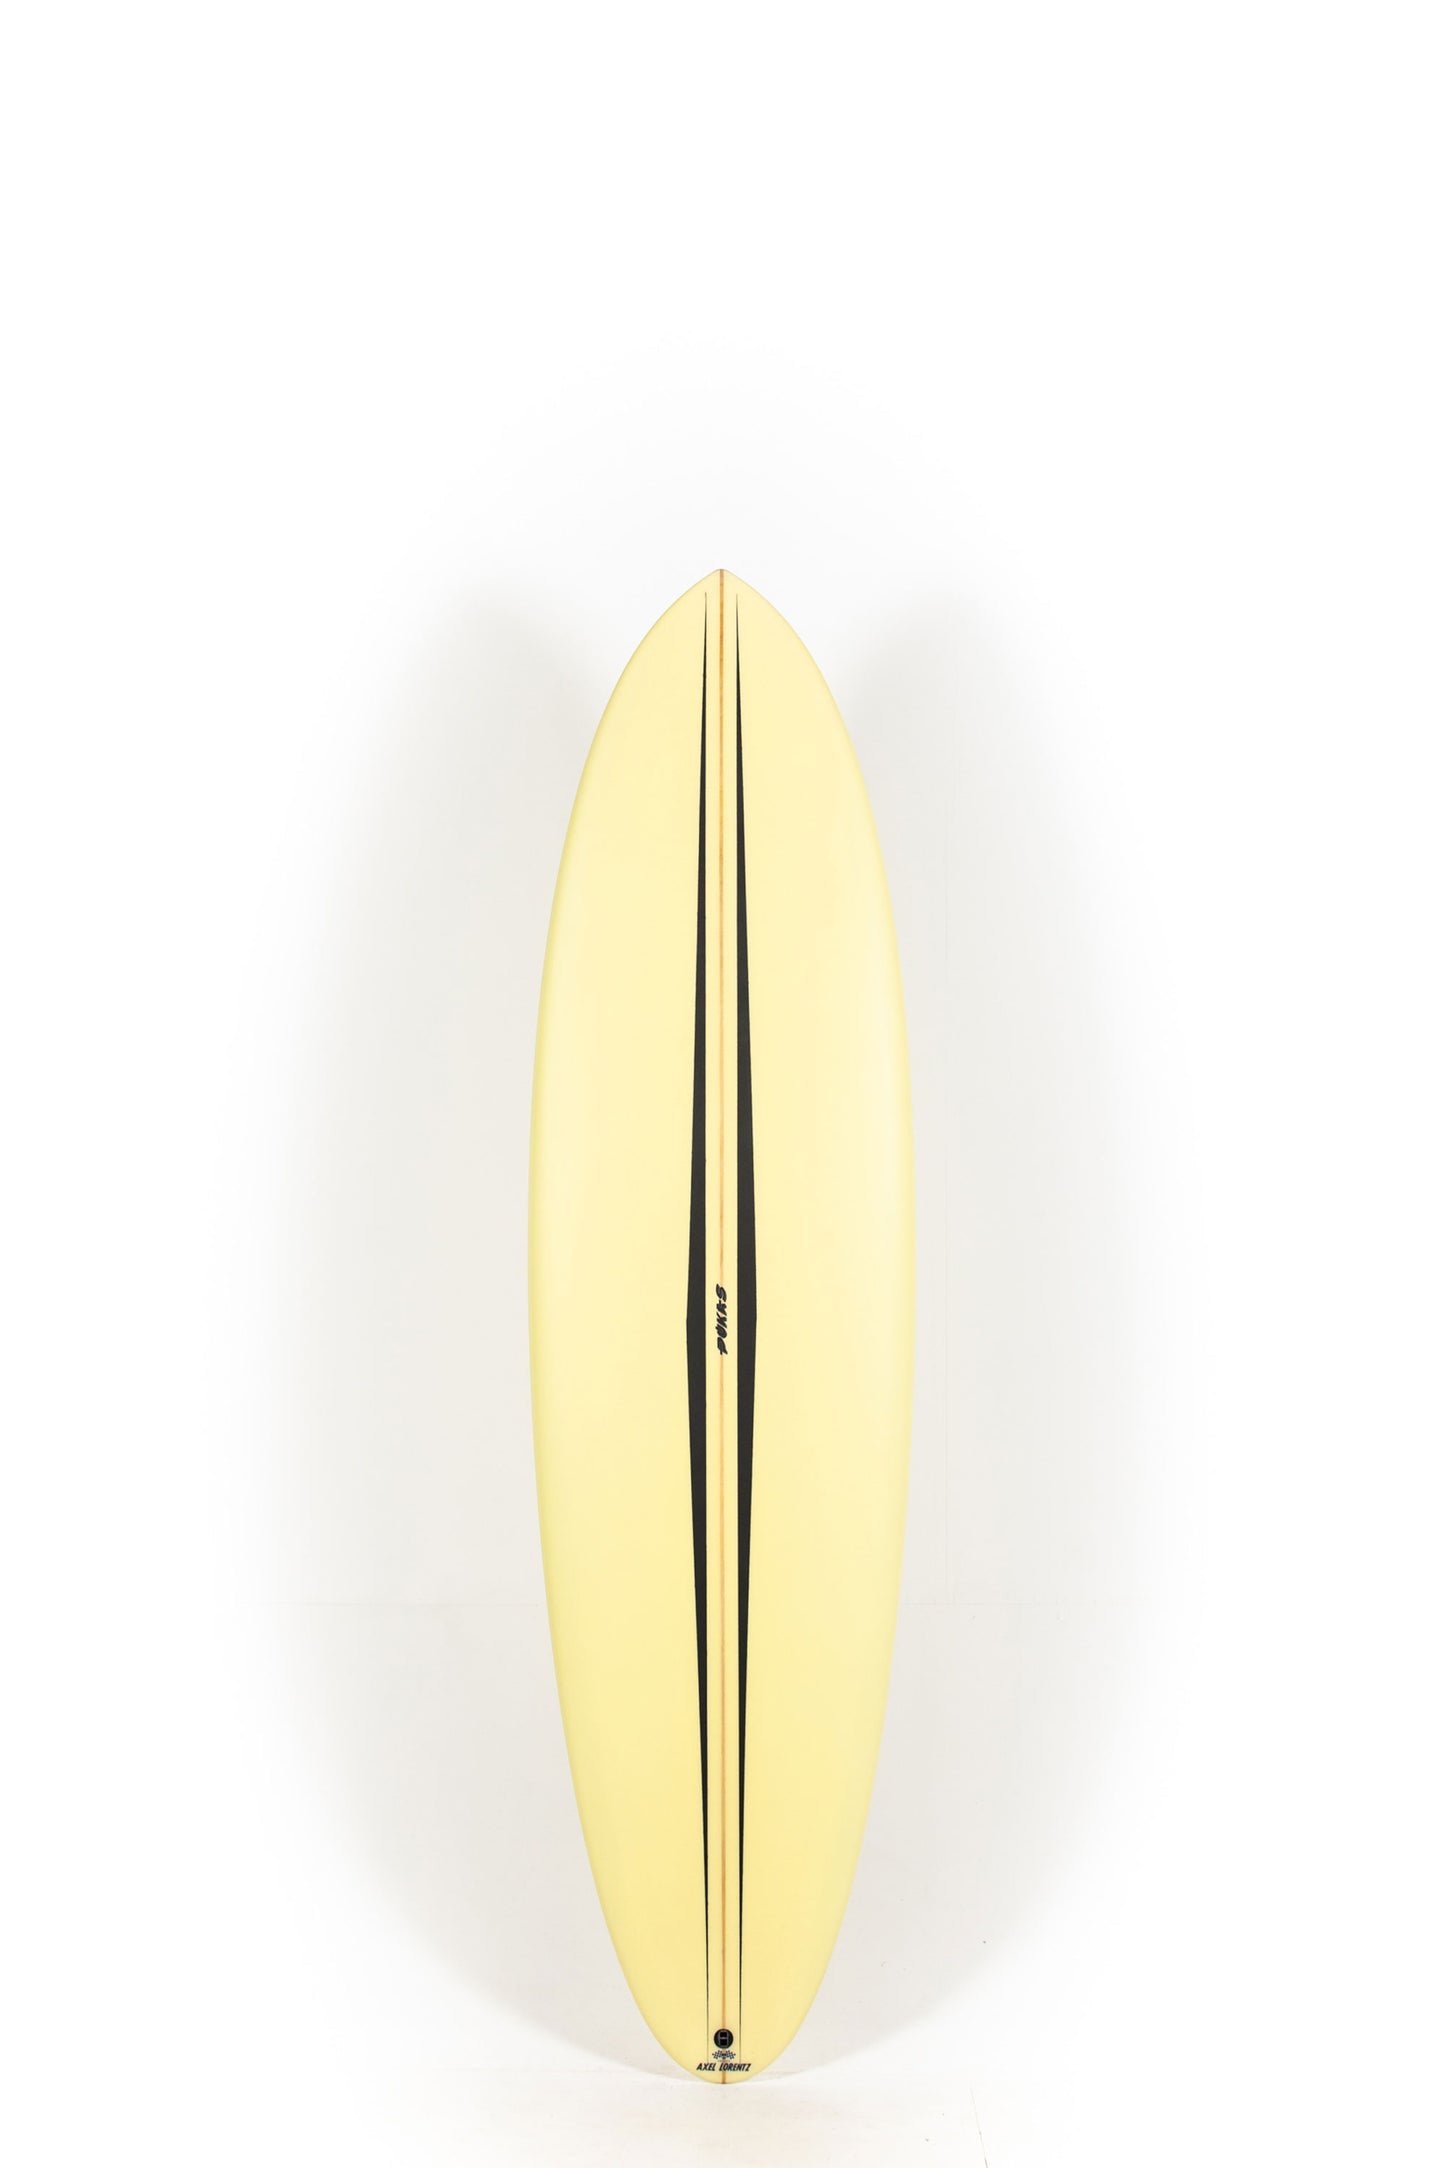 Pukas Surf Shop - Pukas Surfboard - LA CÔTE by Axel Lorentz - 6'10" x 21,38 x 2,94 - 46,8L -  AX08673